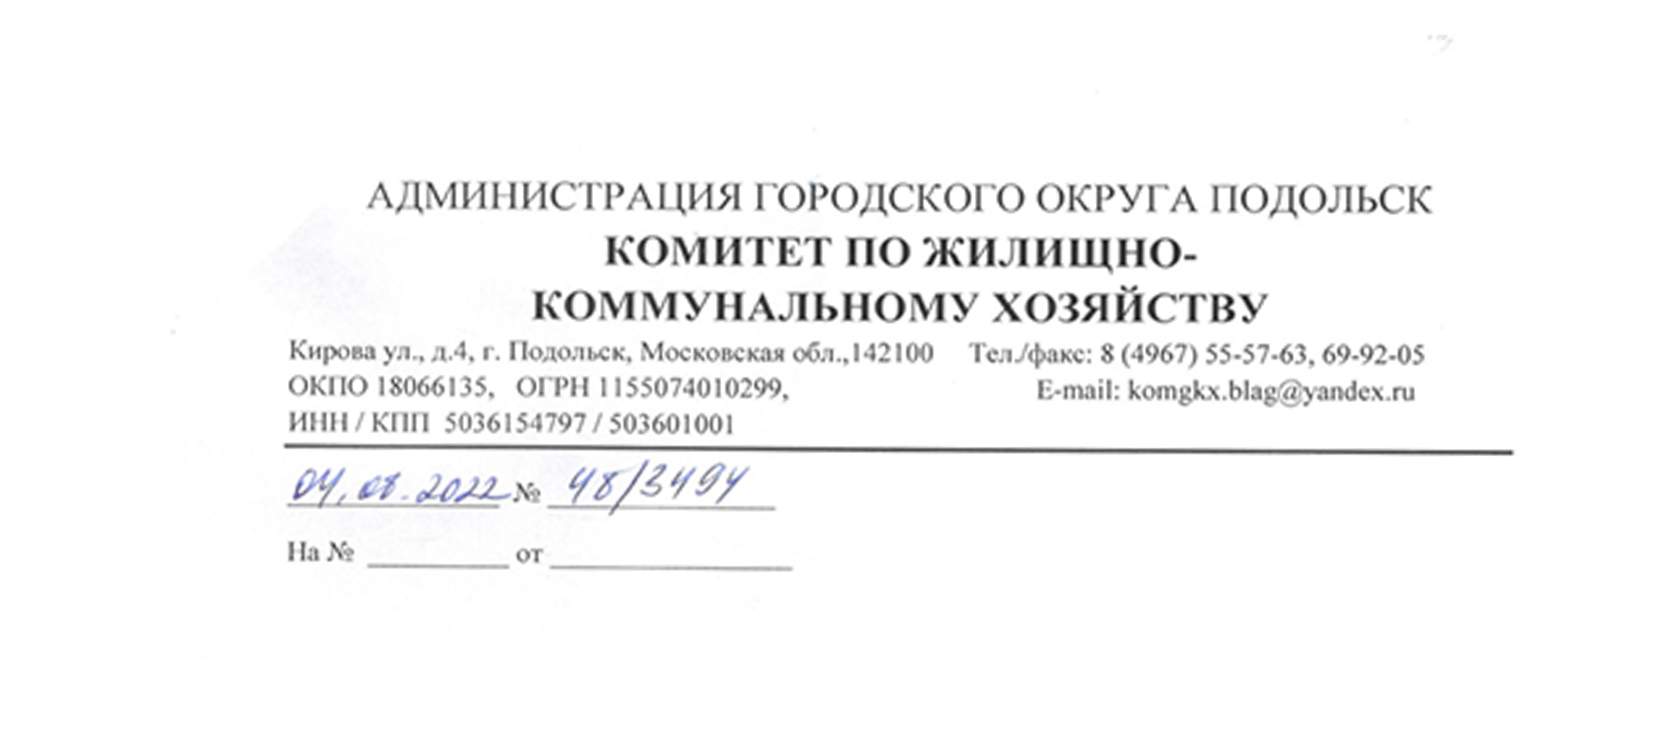 Ответ Администрации городского округа Подольск